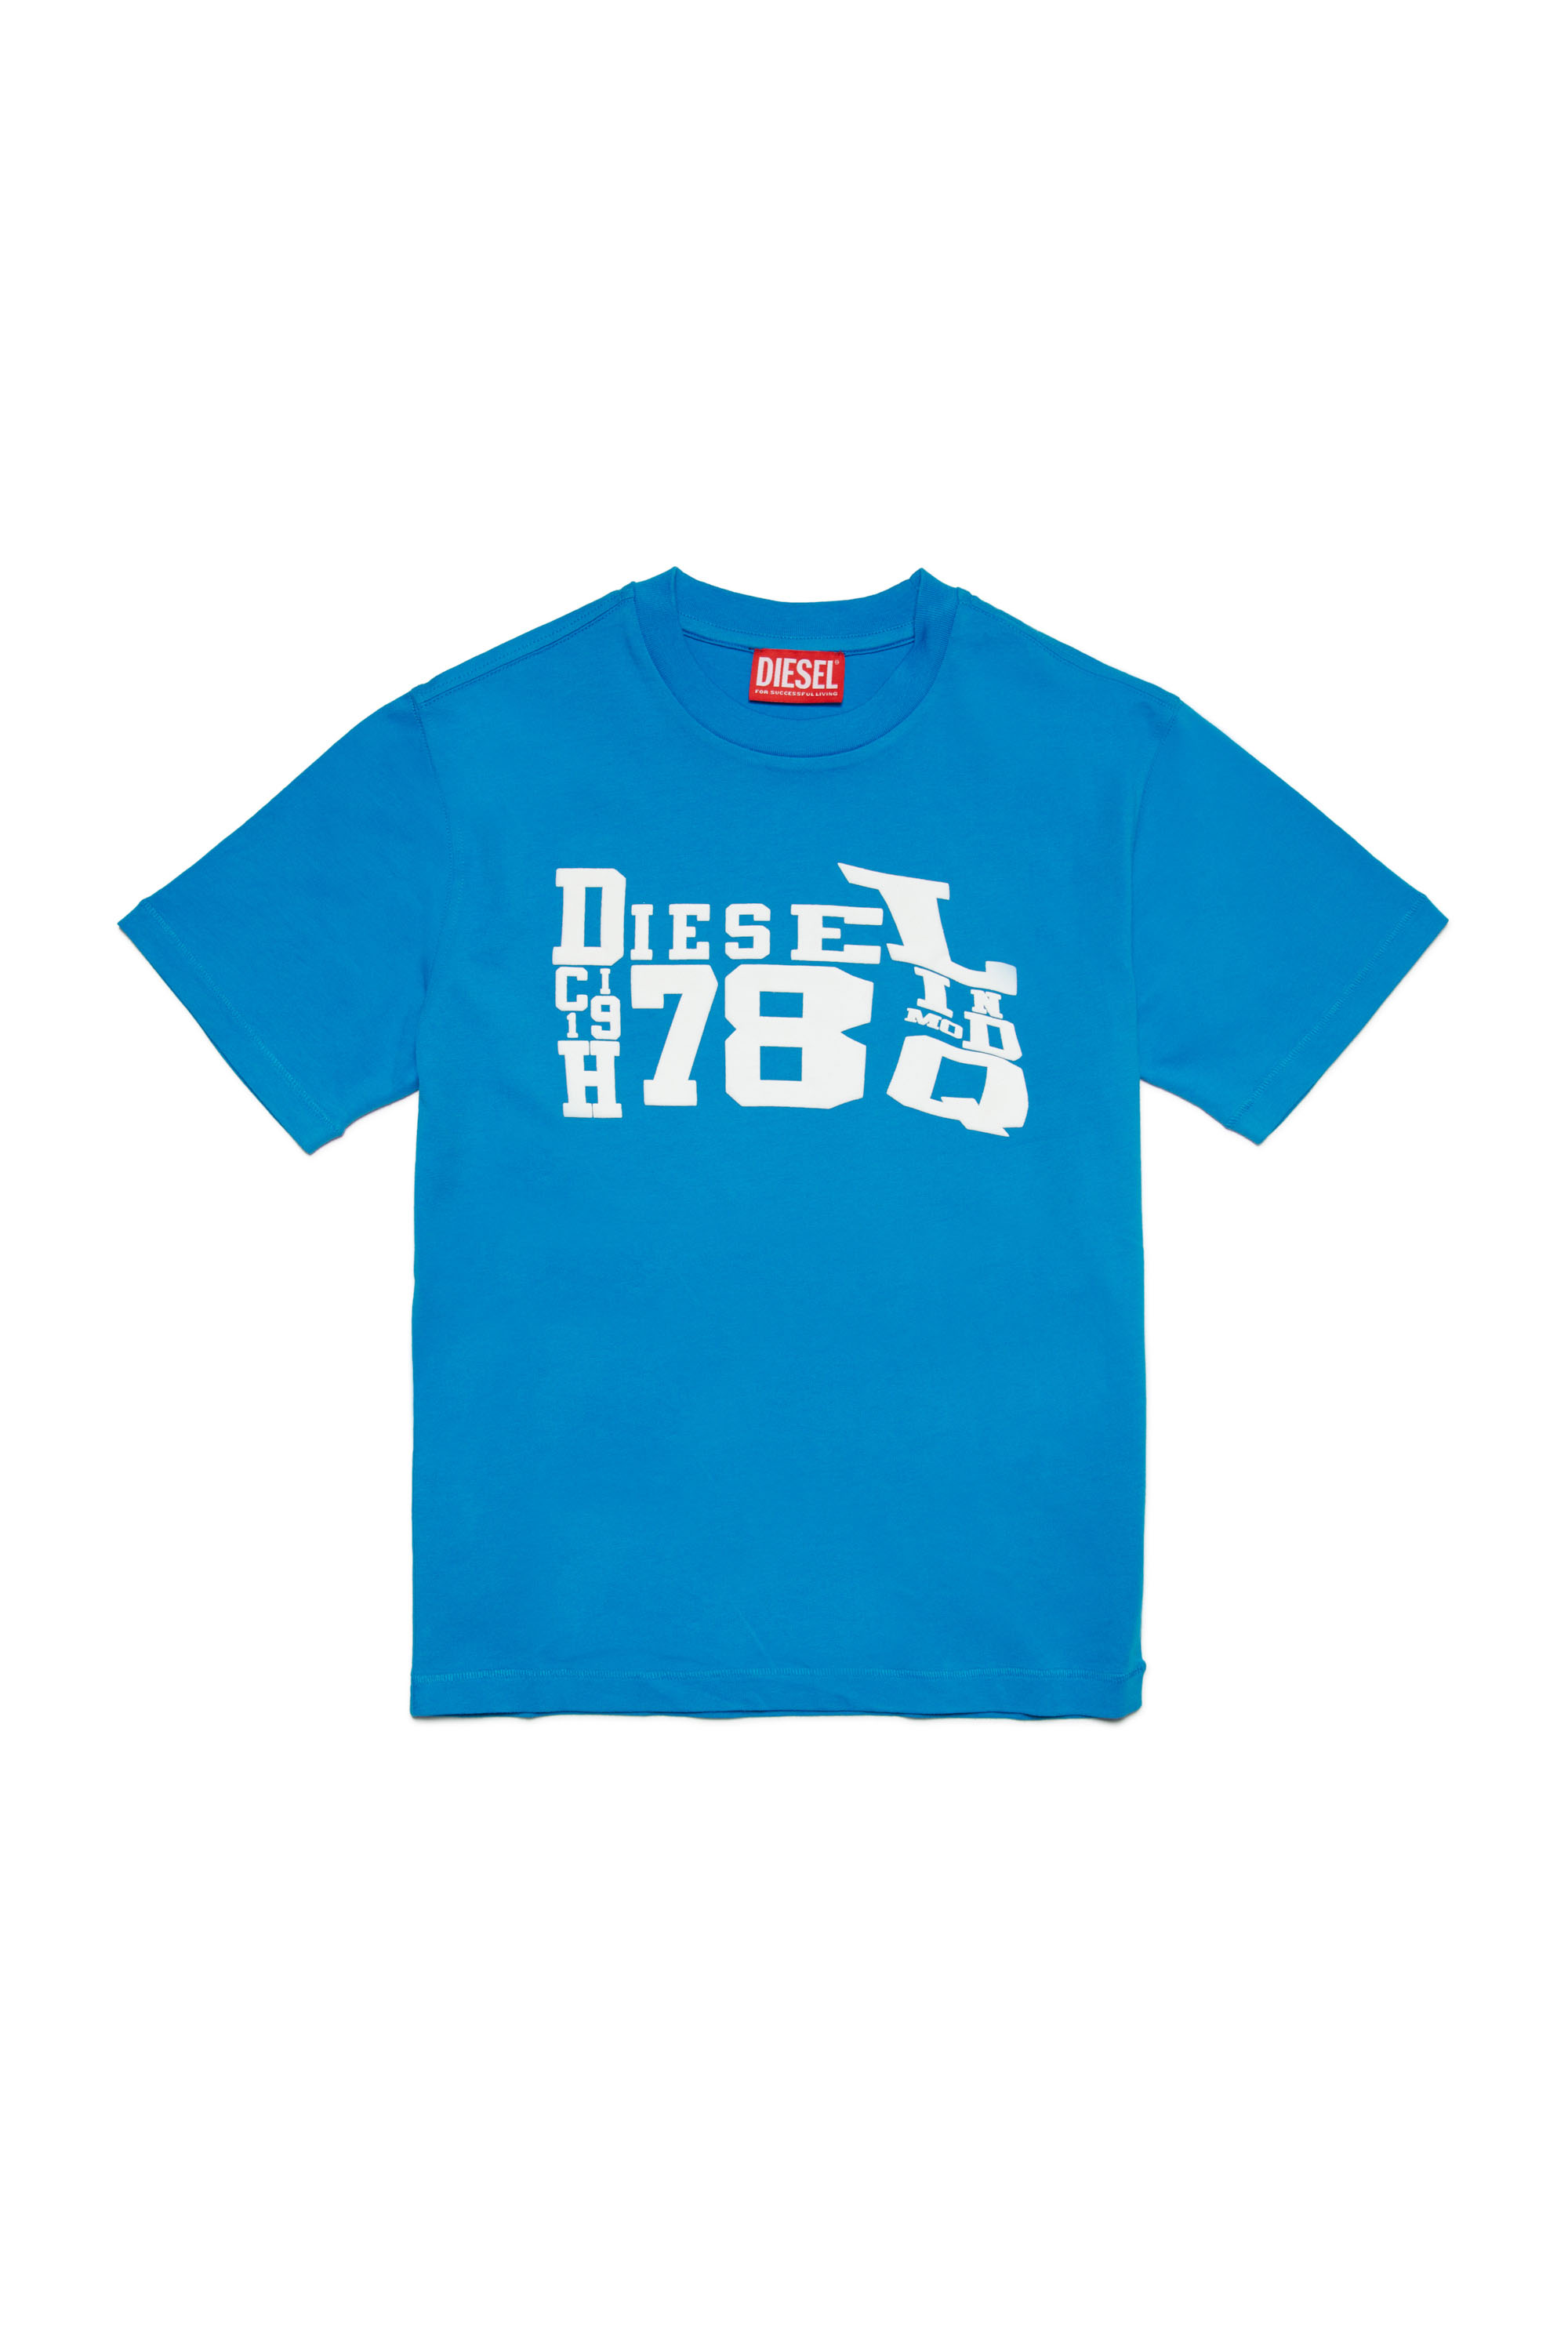 TWASHG9 OVER, ブルー - Tシャツ・カットソー